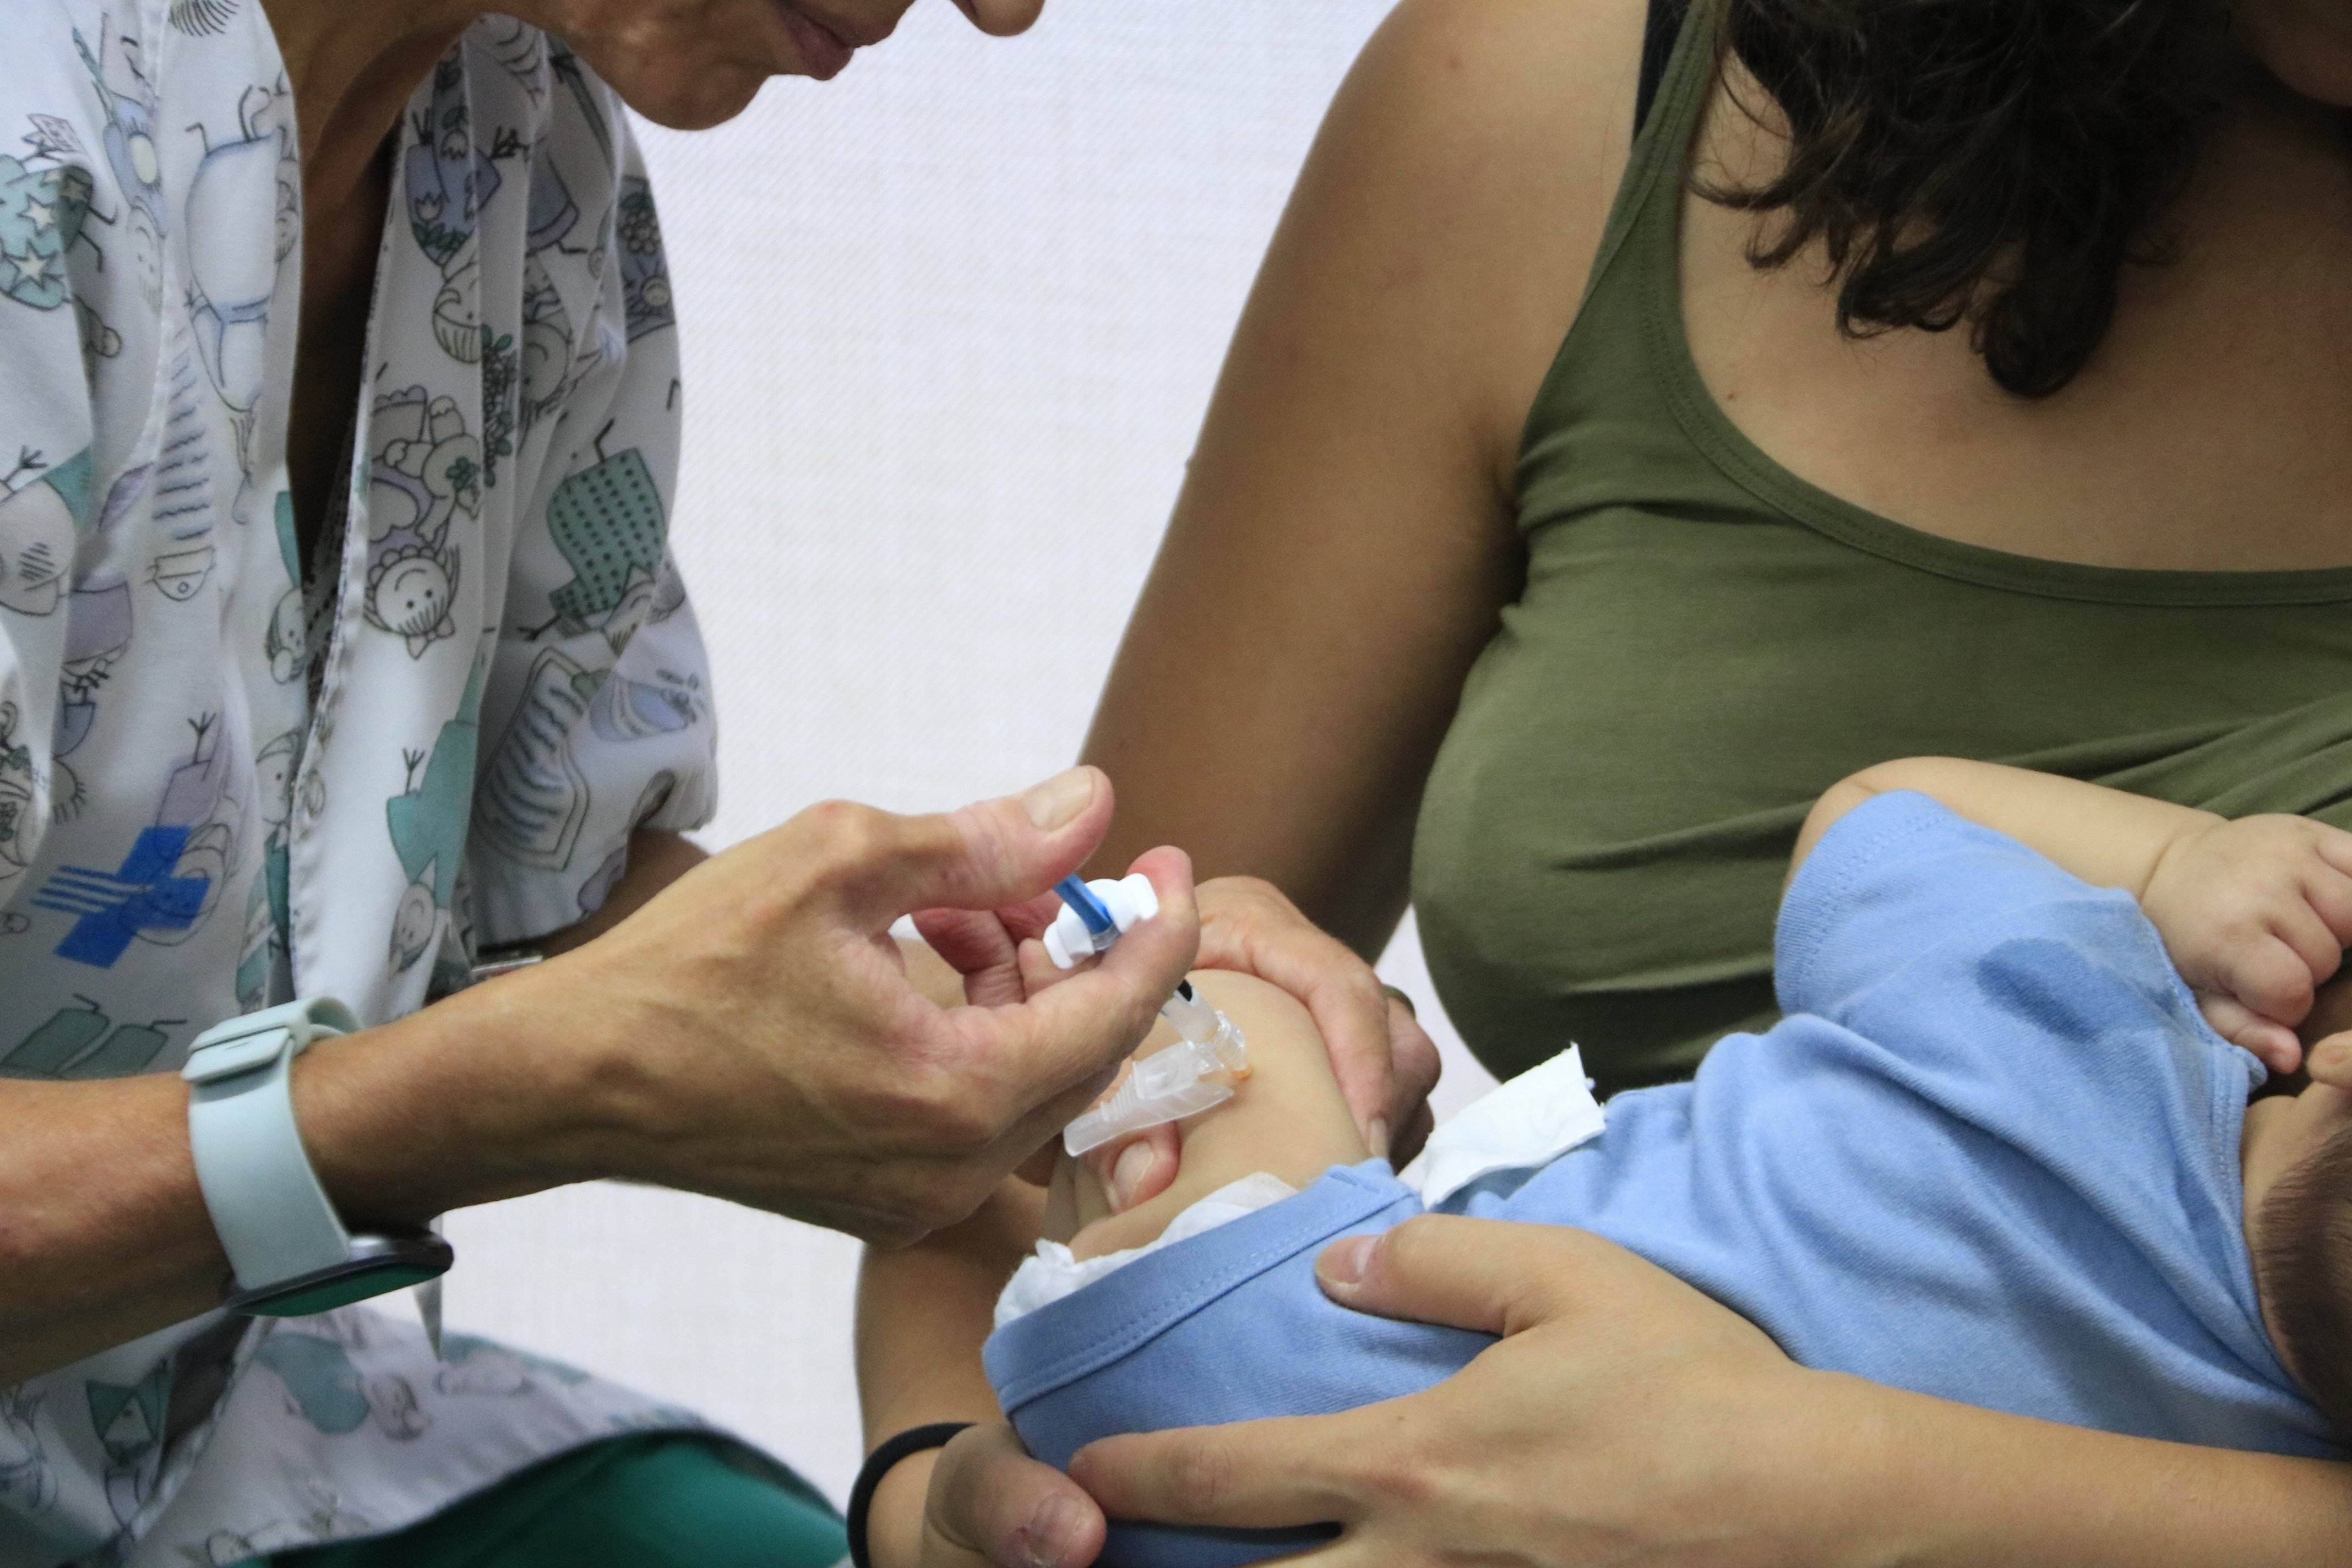 Salut inicia la immunització contra la bronquiolitis en nadons de fins a sis mesos